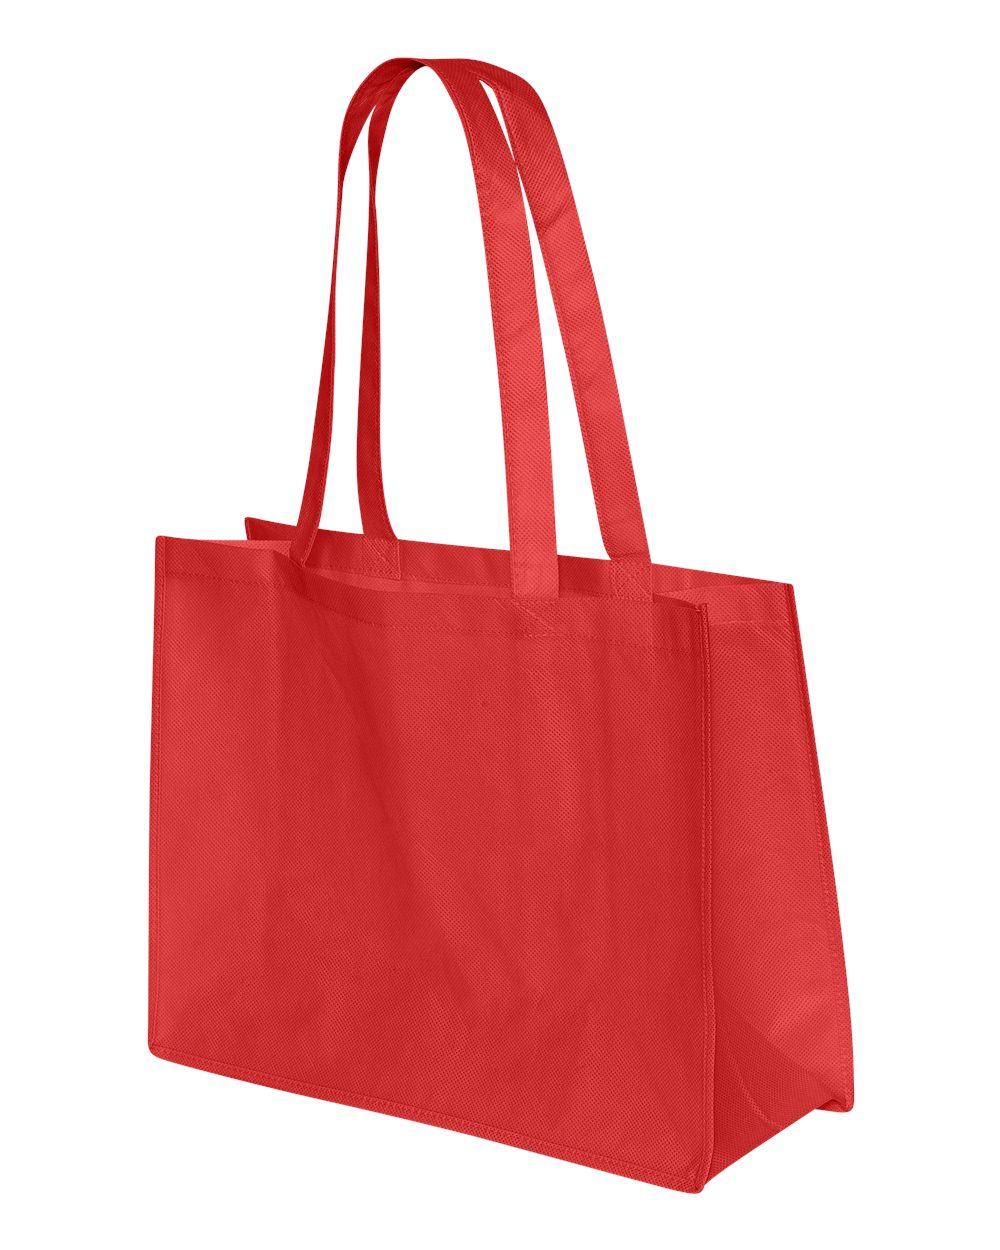 Valubag VB0909 - Eco Friendly Reusable Non-Woven Shopping Tote $0.84 - Bags